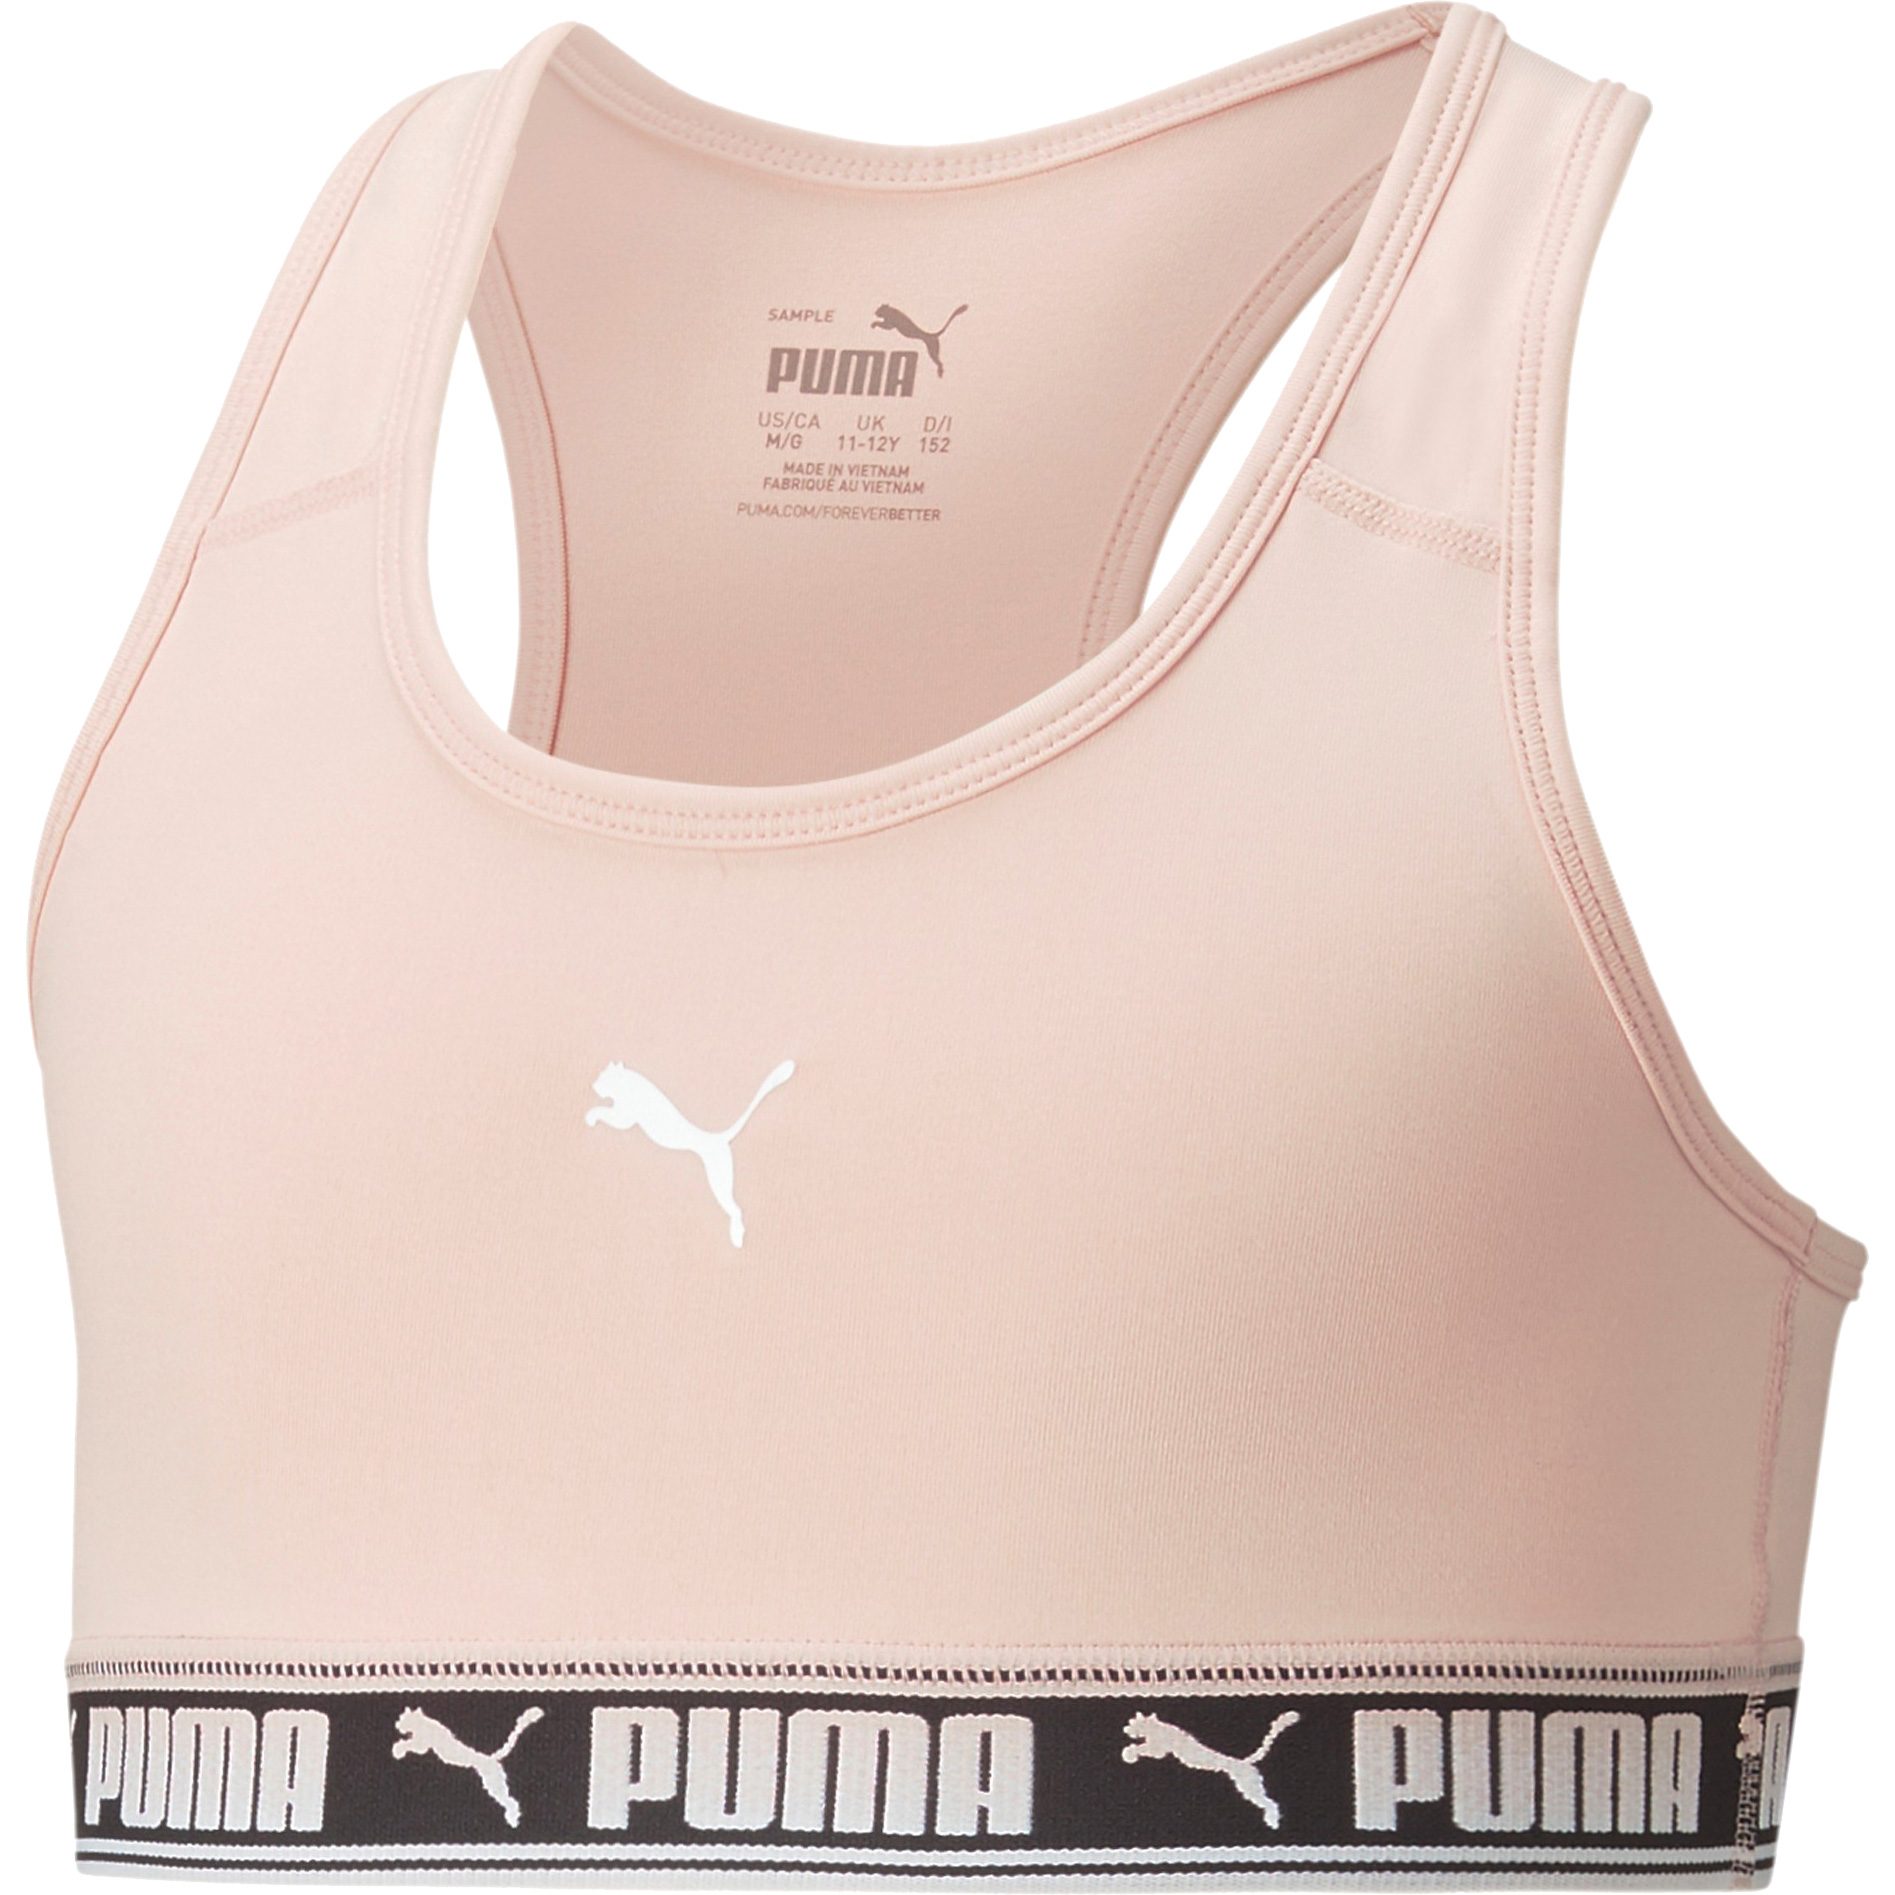 Puma STRONG Training Bra Preto - Textil Tops e soutiens de desporto Mulher  46,99 €